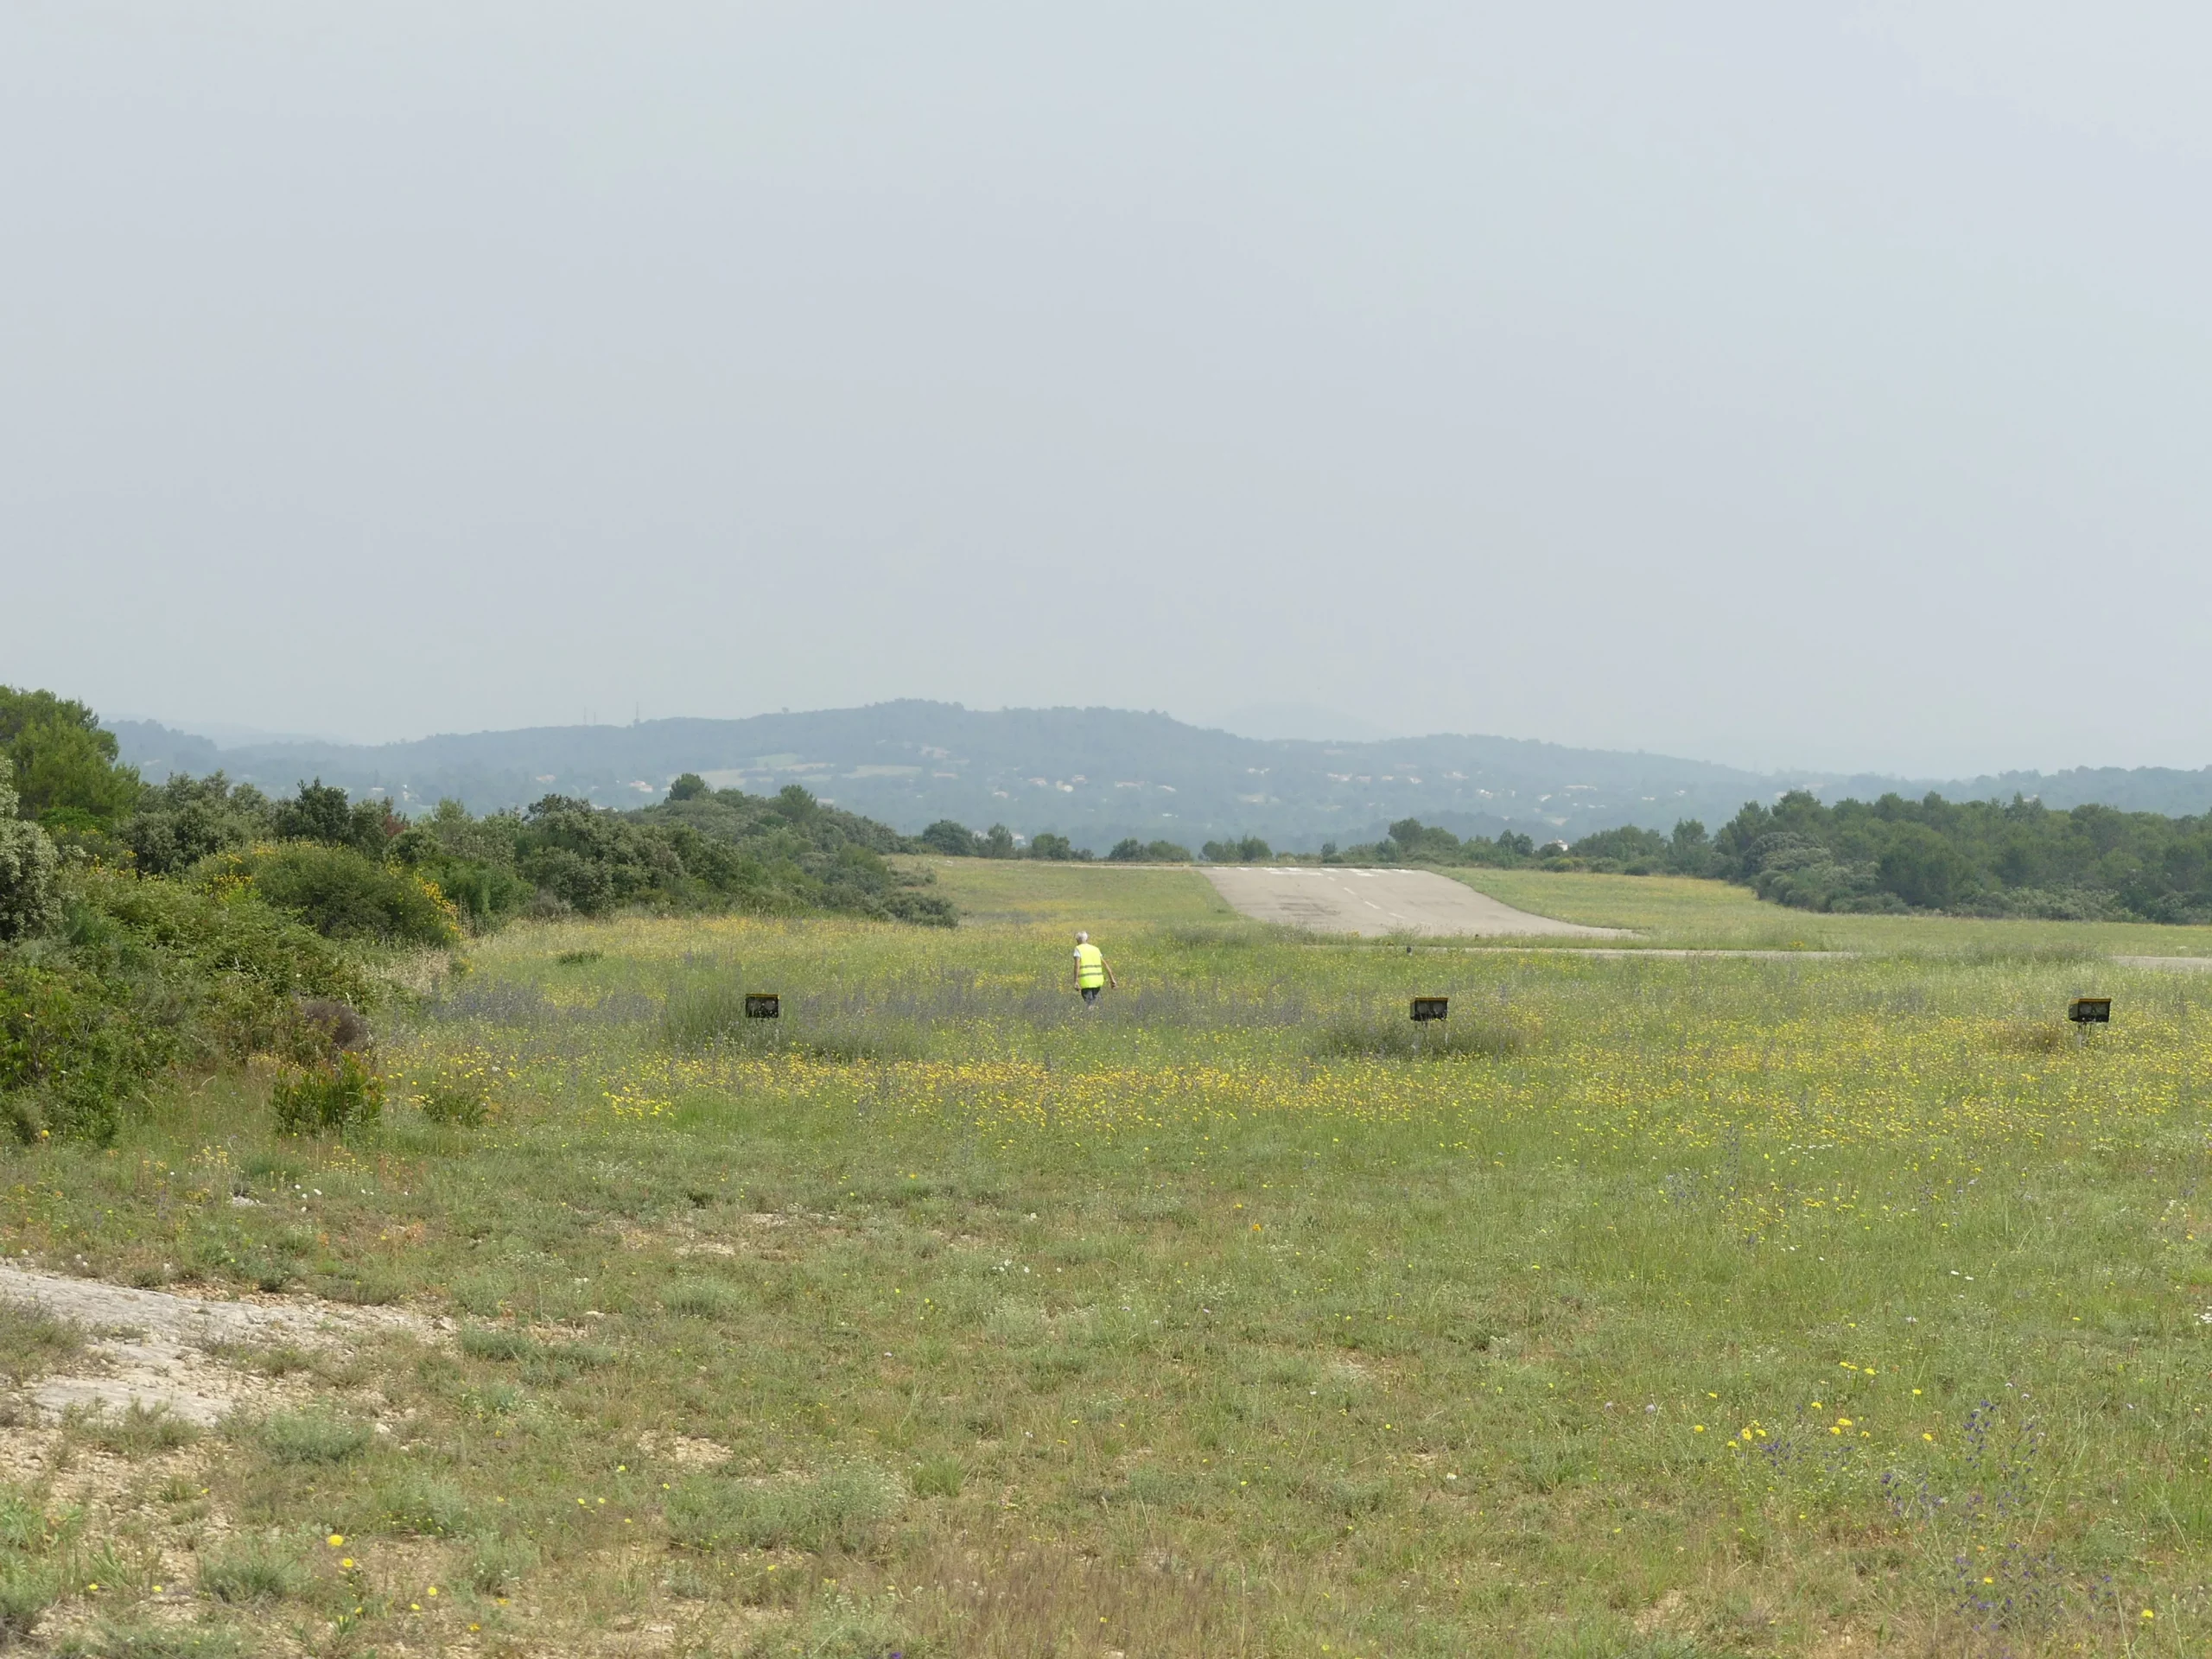 Piste et champ de l'Aérodrome d’Alès-Cévennes